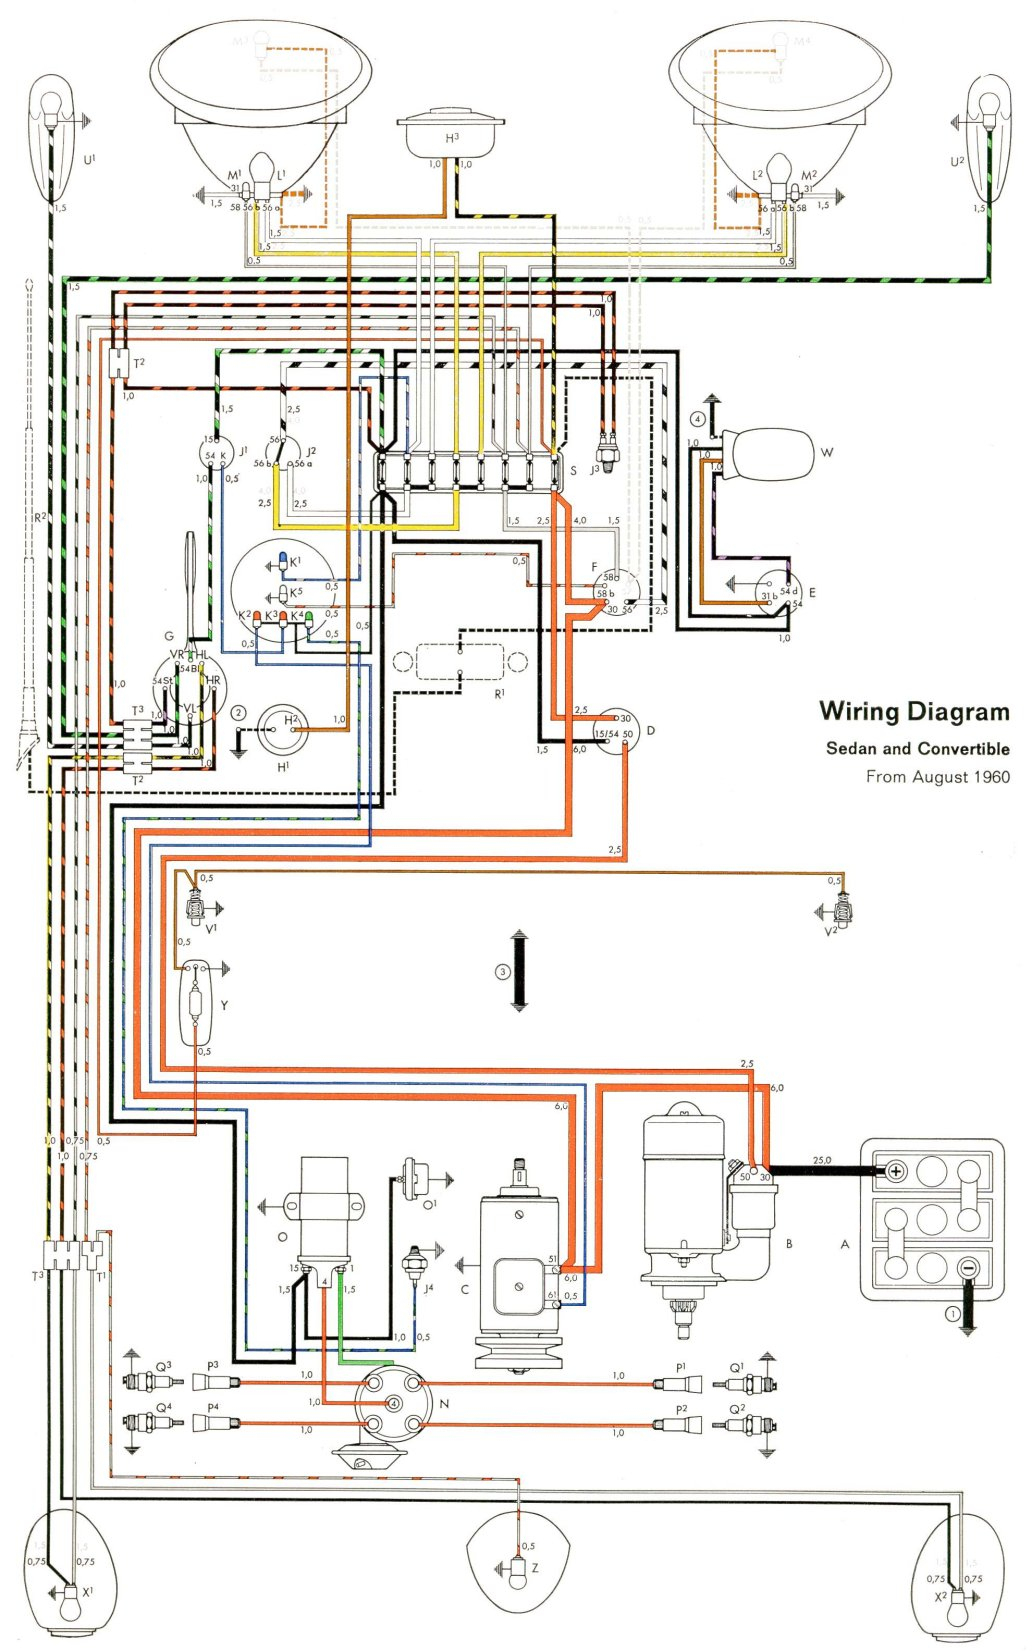 Thesamba :: Type 1 Wiring Diagrams - Vw Wiring Diagram